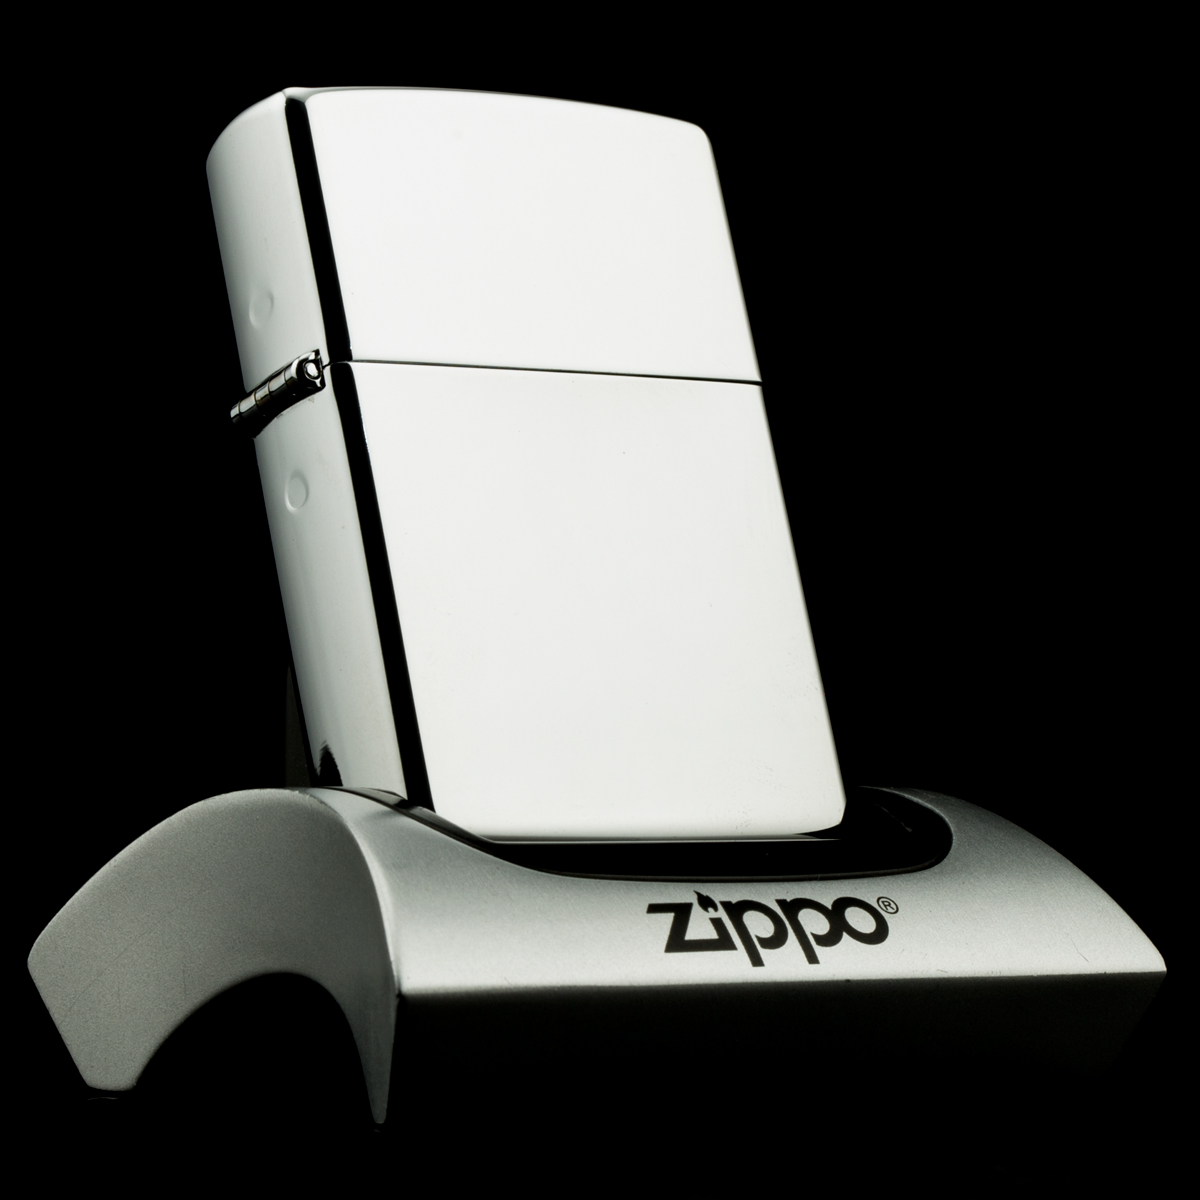 hop-quet-zippo-1991-pen-lighter-hop-qua-zippo-va-viet-zippo-chrome-tron